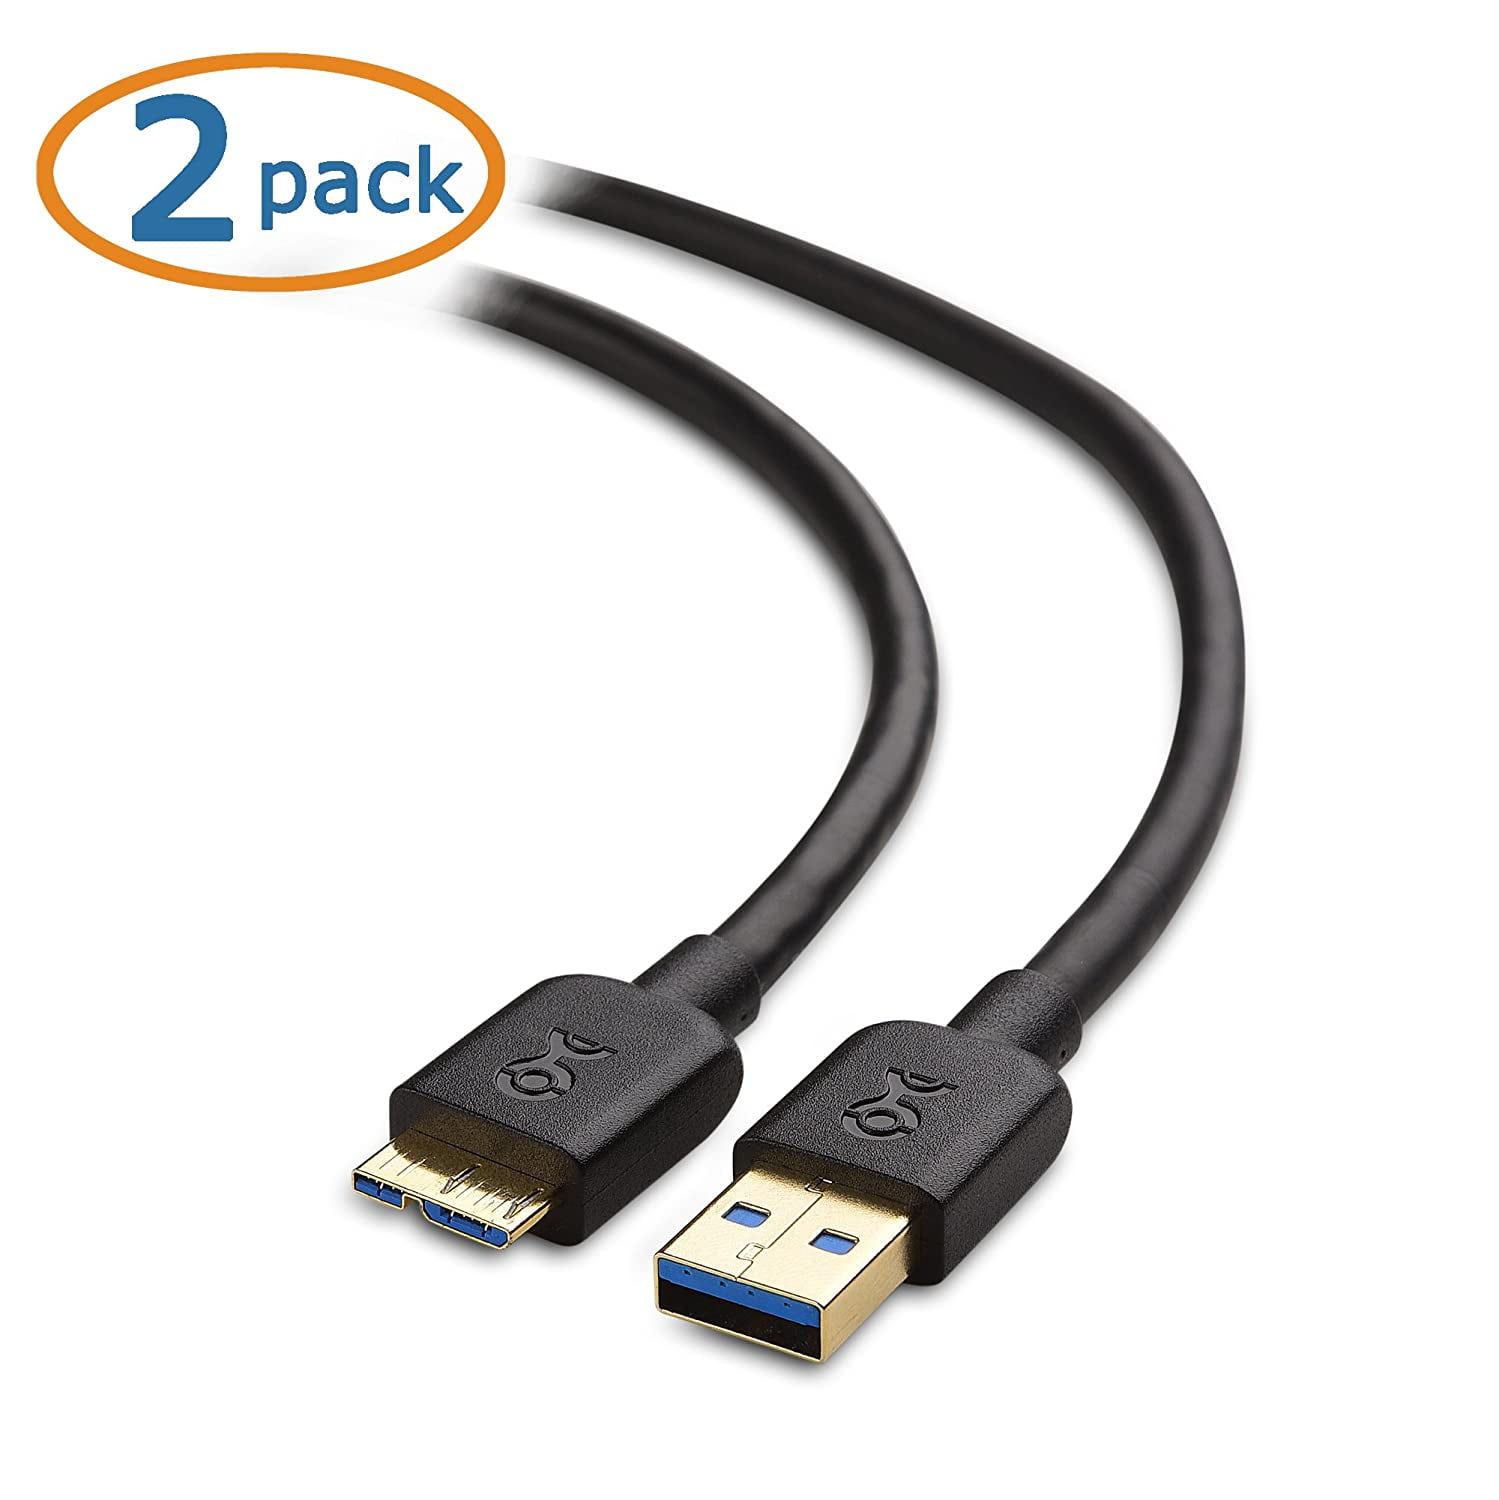 CORDON USB 3.0, Type A mâle - Type B-micro, 2m, noir